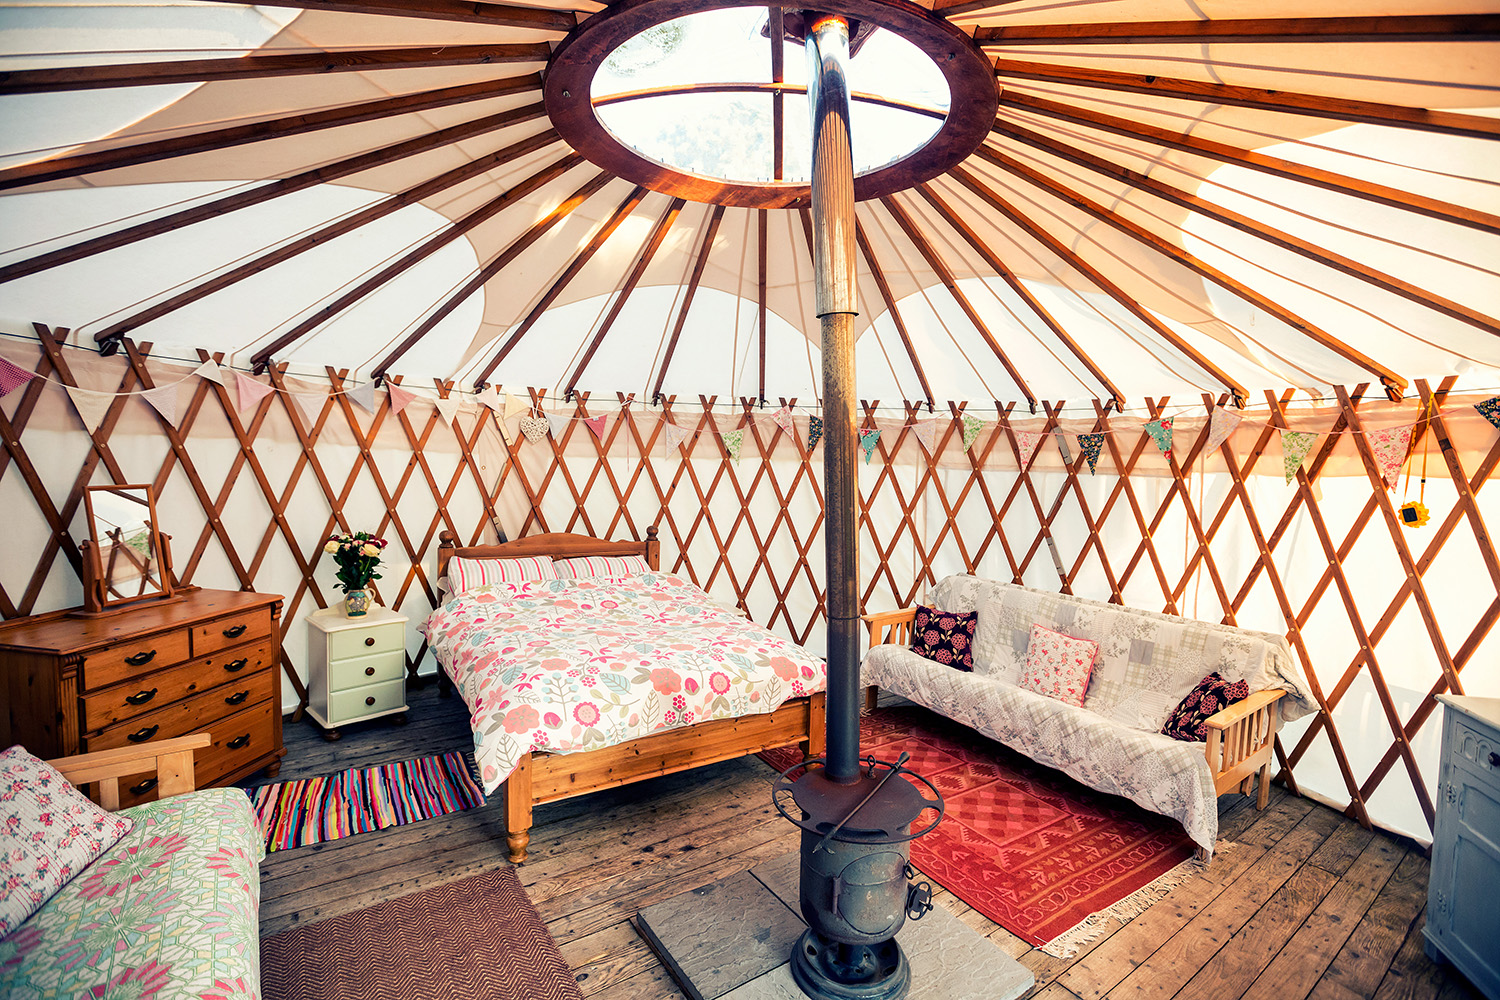 Yurt interior at Cuckoo Down Farm Glamping